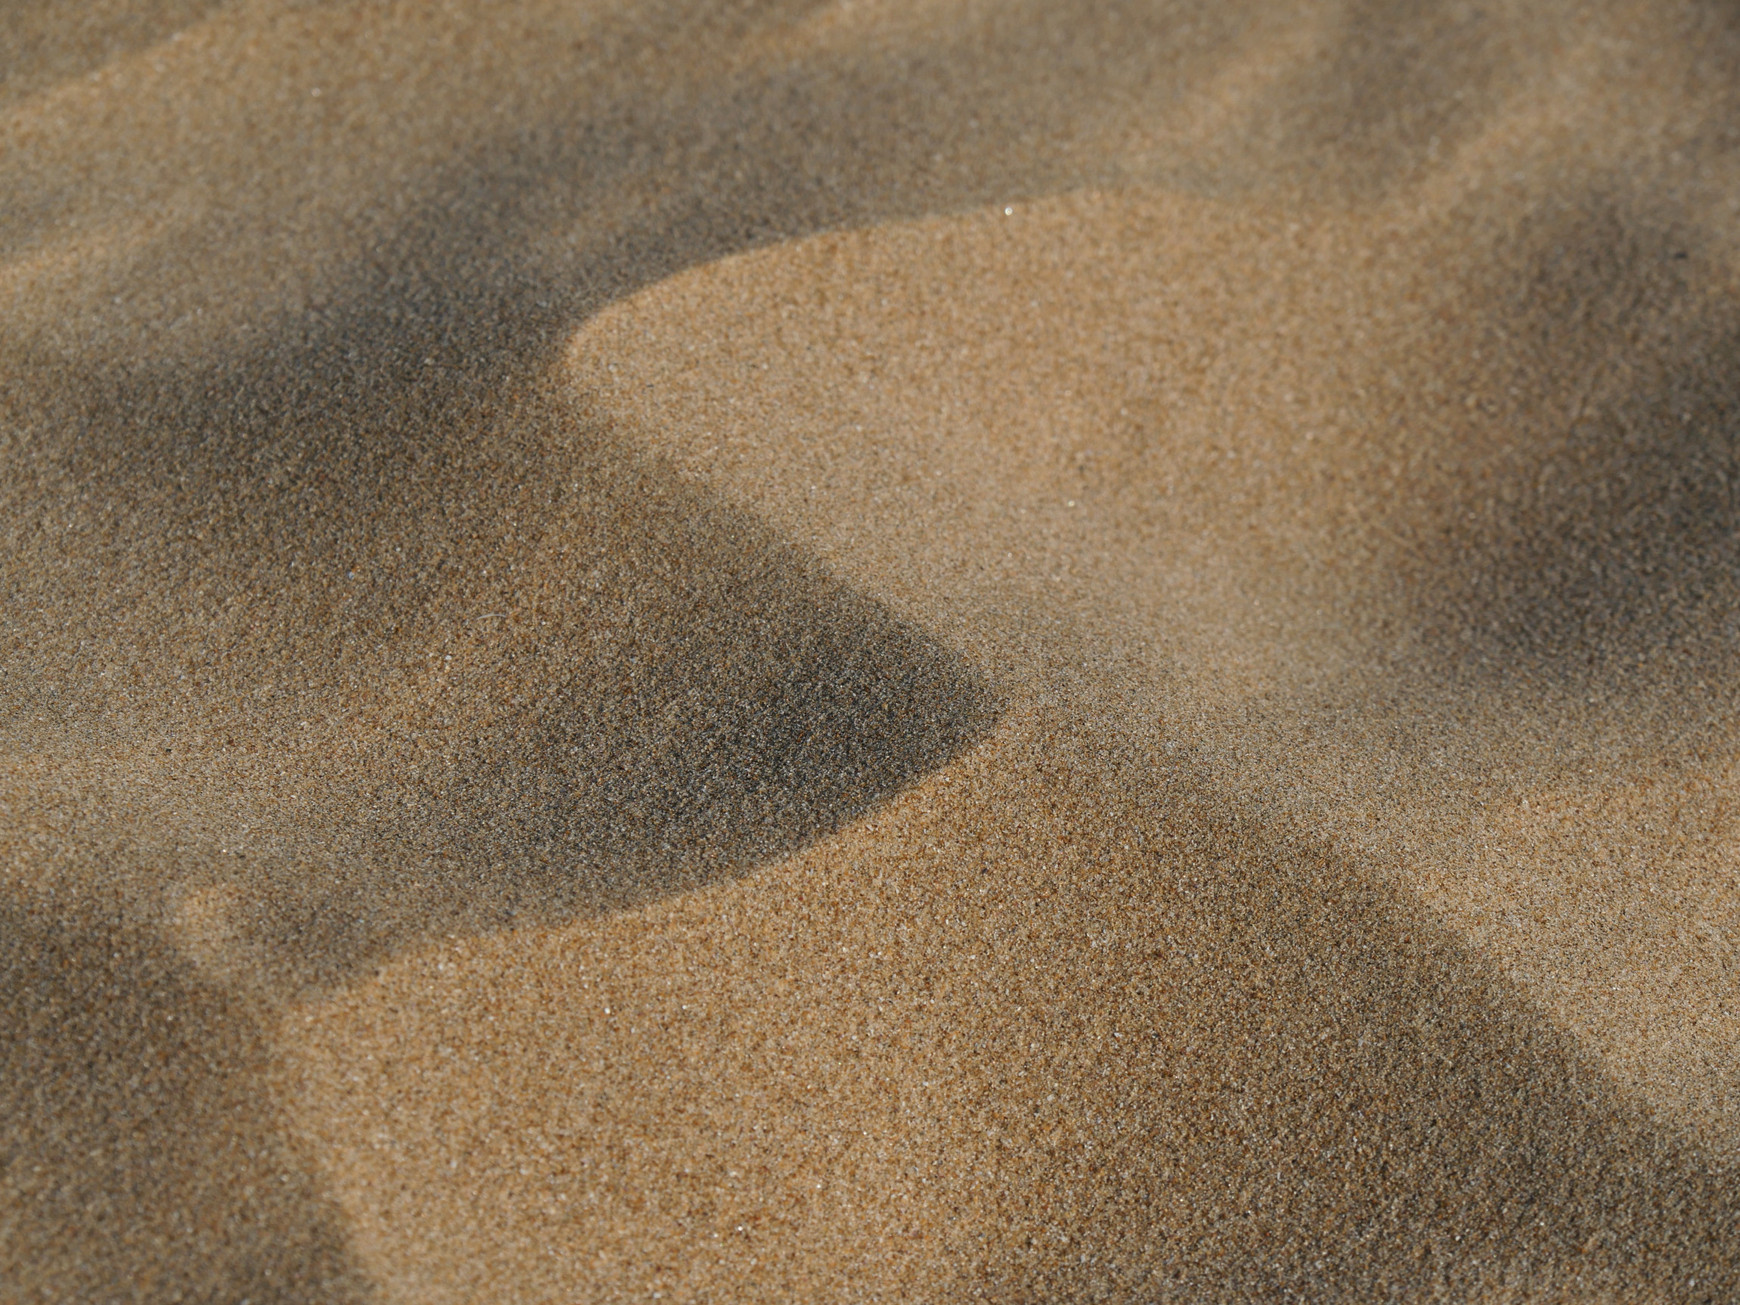 @Rafael Garcin / Unsplash L'extraction massive de sable dans les océans